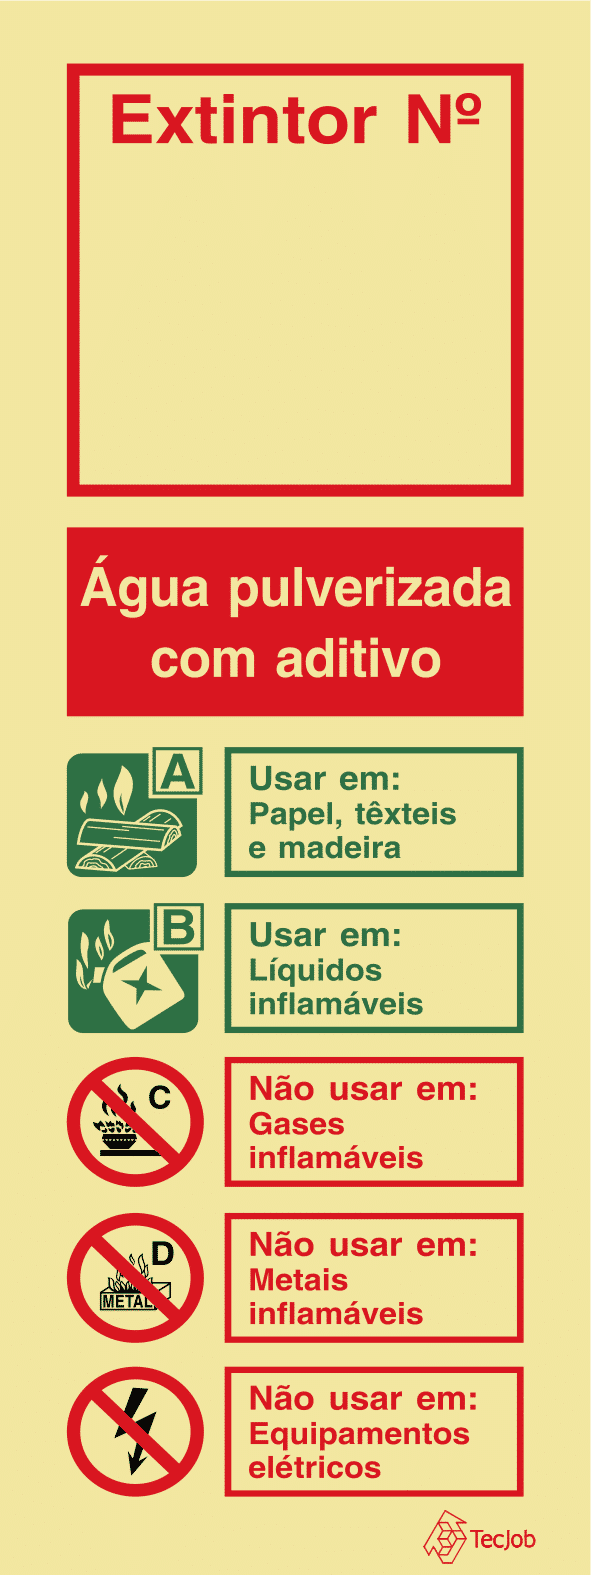 Sinalética Agente Extintor Água Pulverizada com Aditivo com nº - I0183